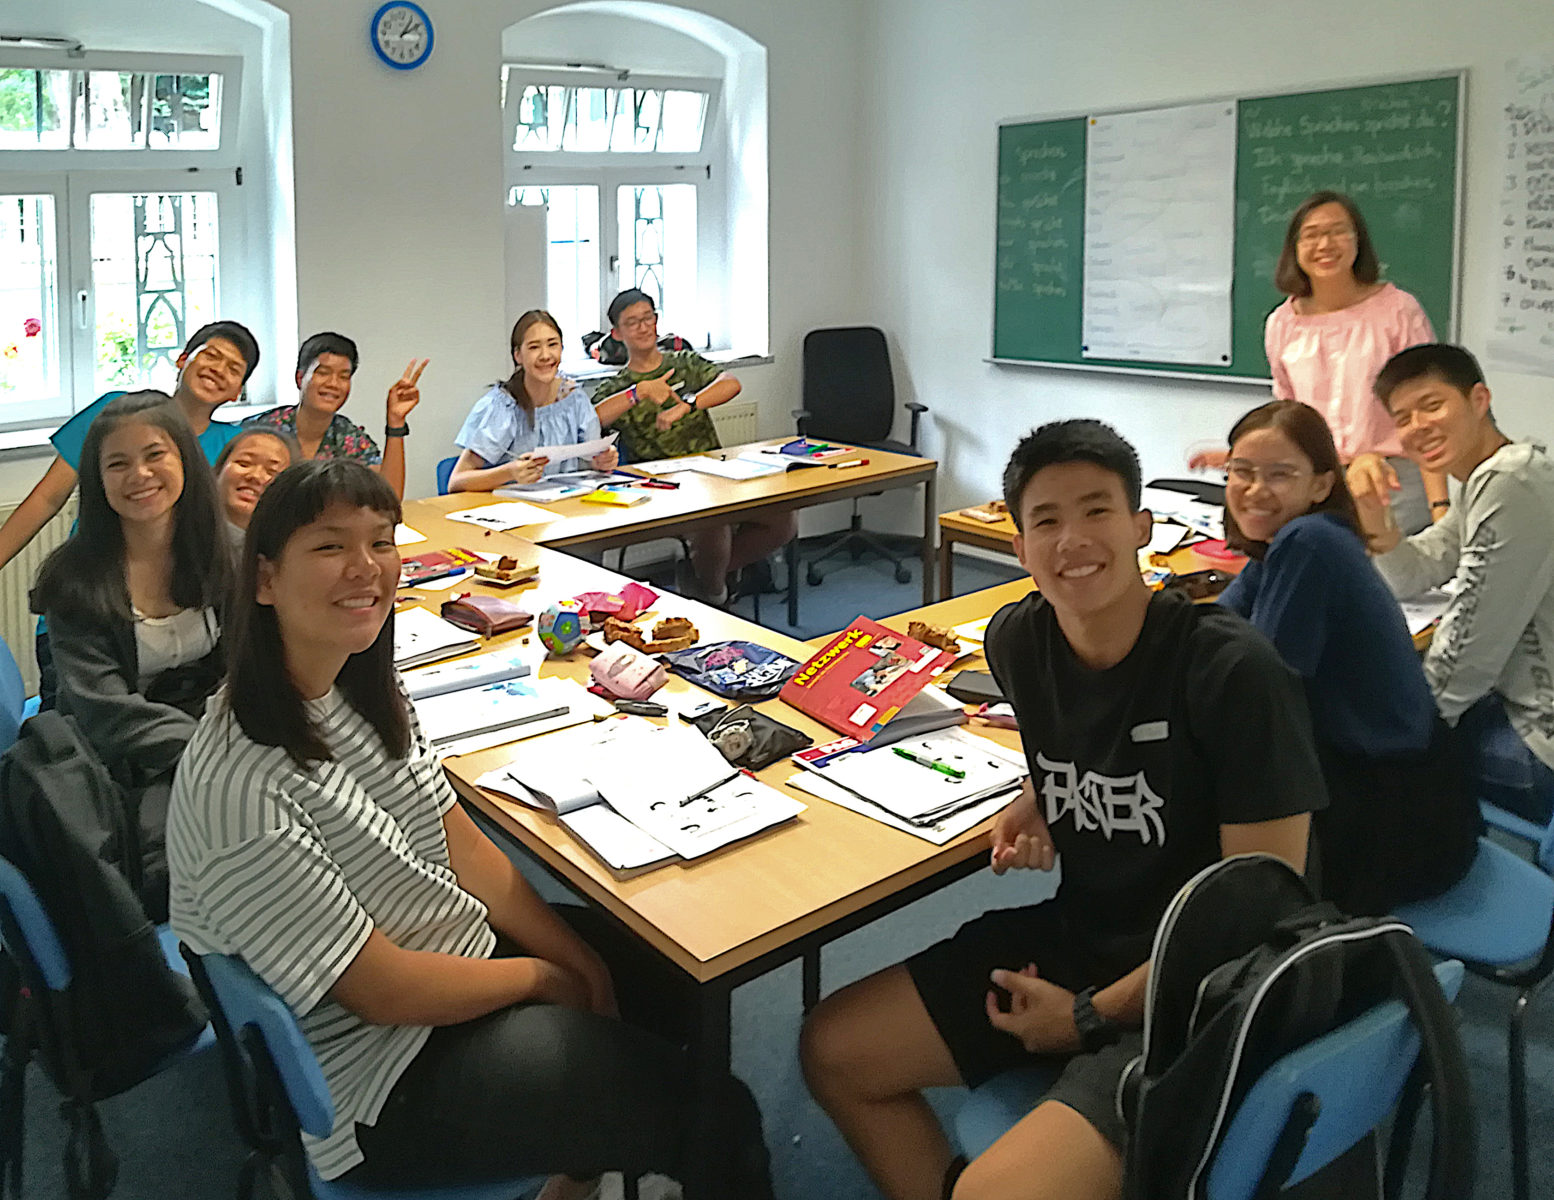 Die ersten Schüler am neuen Standort - weitgereiste Austauschschüler aus Südostasien